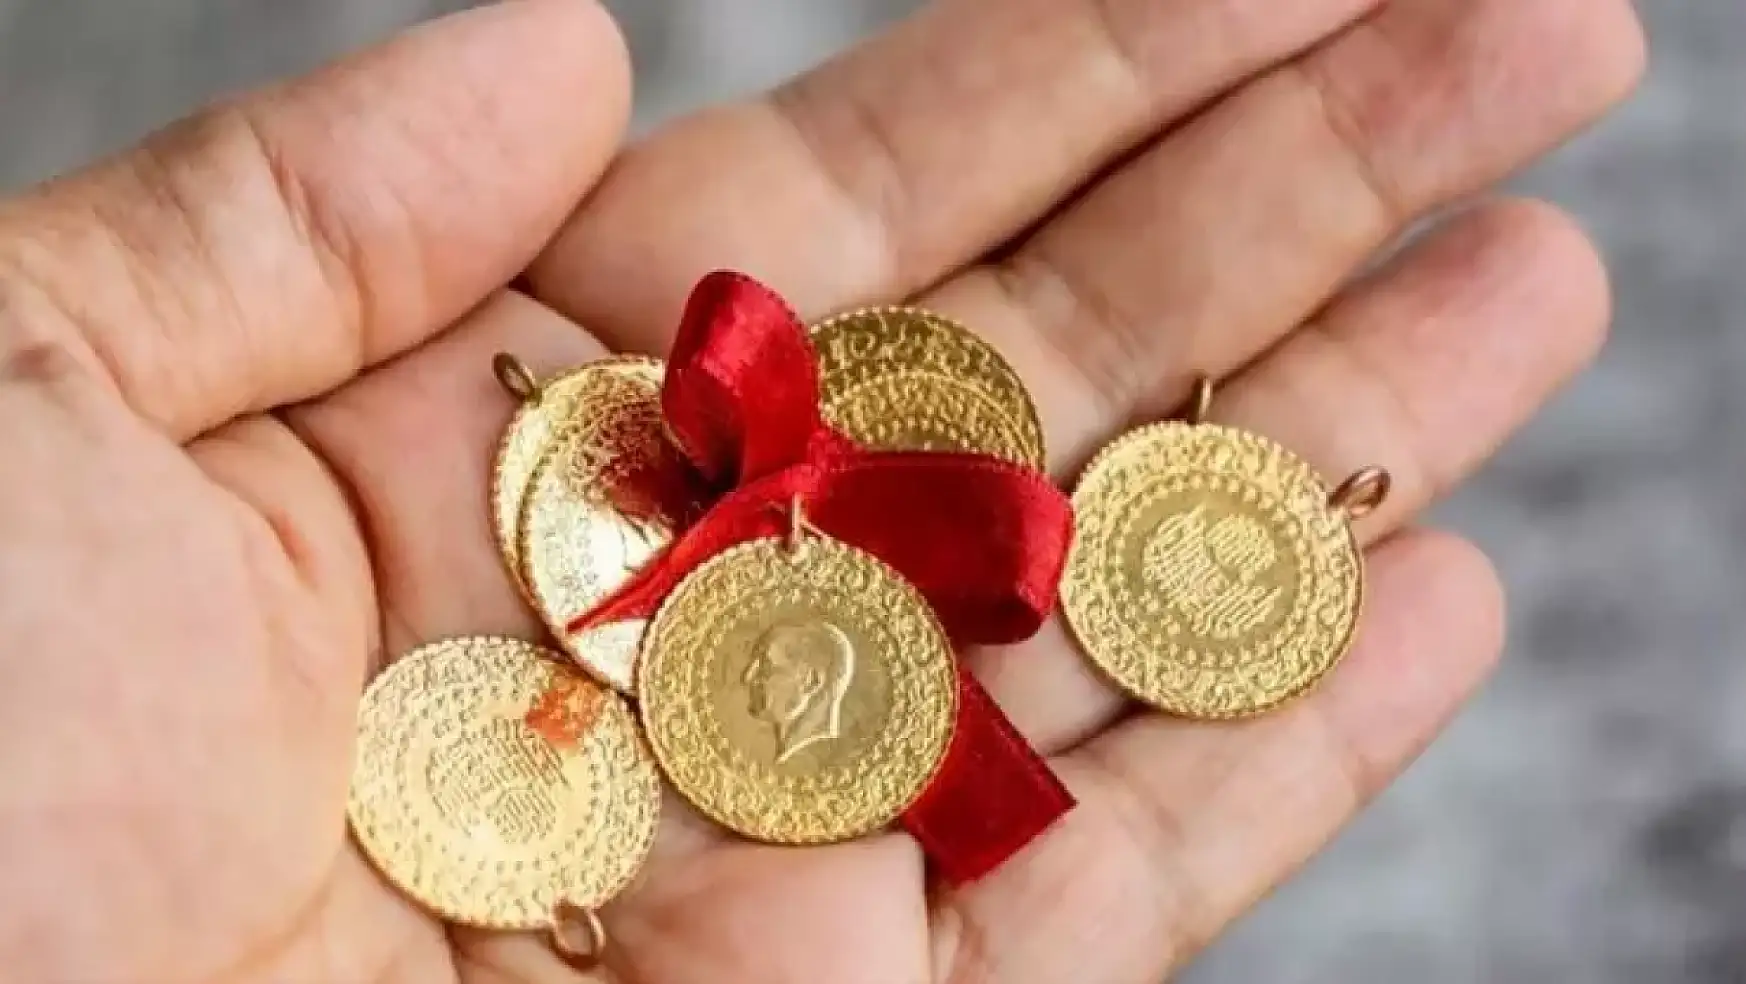 Kuyumcular odası açıkladı: Altın bu tarihte 500 lira birden değişecek